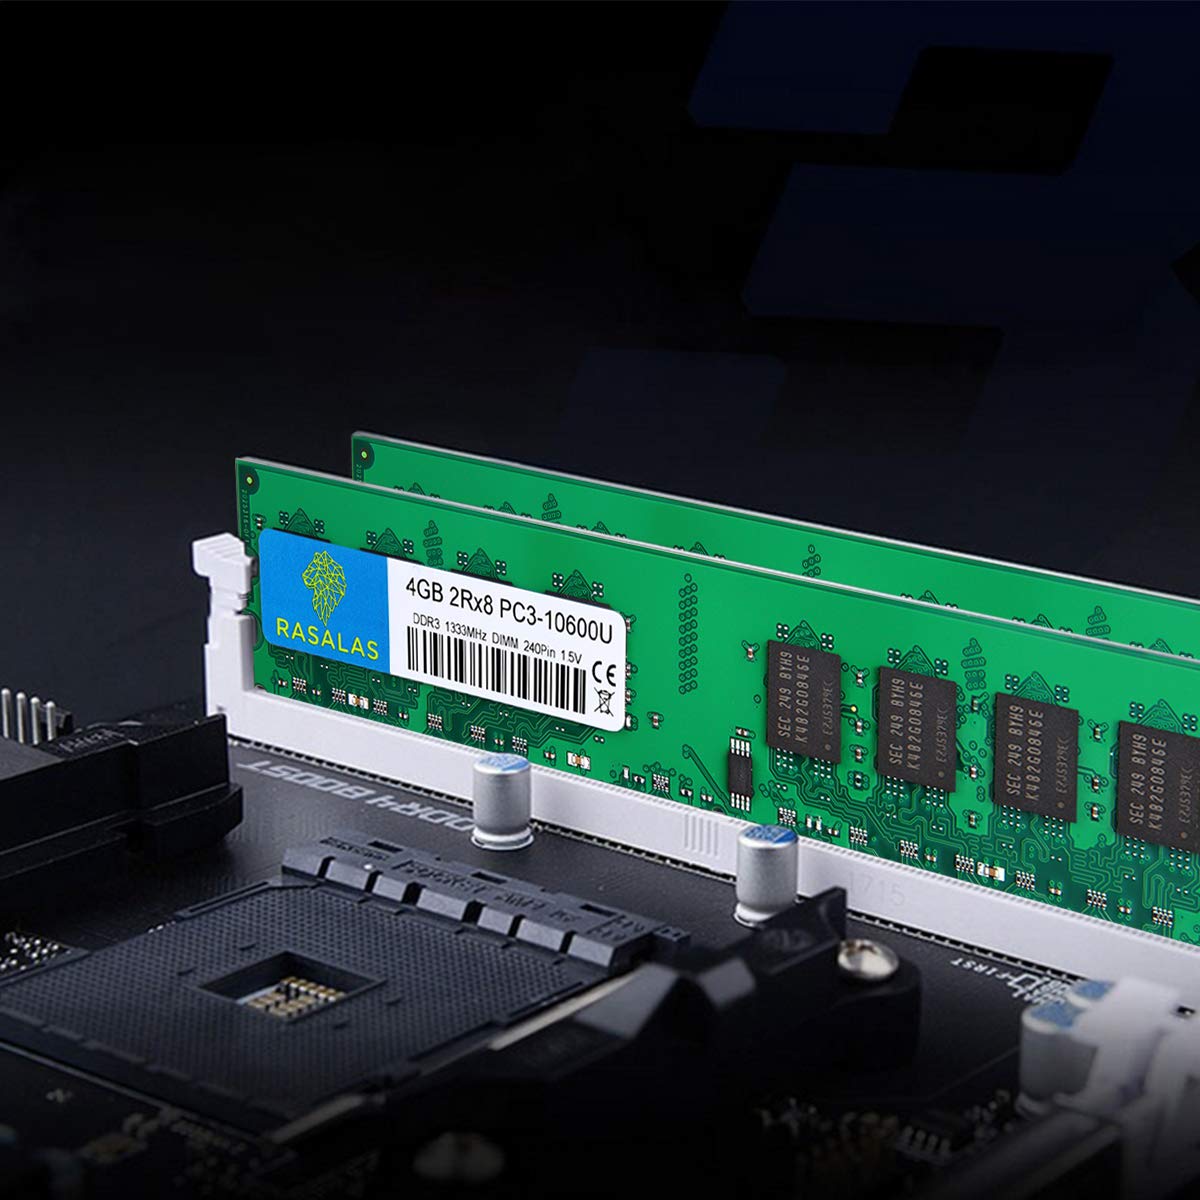 Rasalas 8GB Kit (2x4GB) PC3-10600 DDR3 1333 PC3 10600U Ram DDR3 2Rx8 PC3 10600U 1333 mhz DDR3 1.5V CL9 240-pin DDR3 Memory Module Upgrade for Desktop